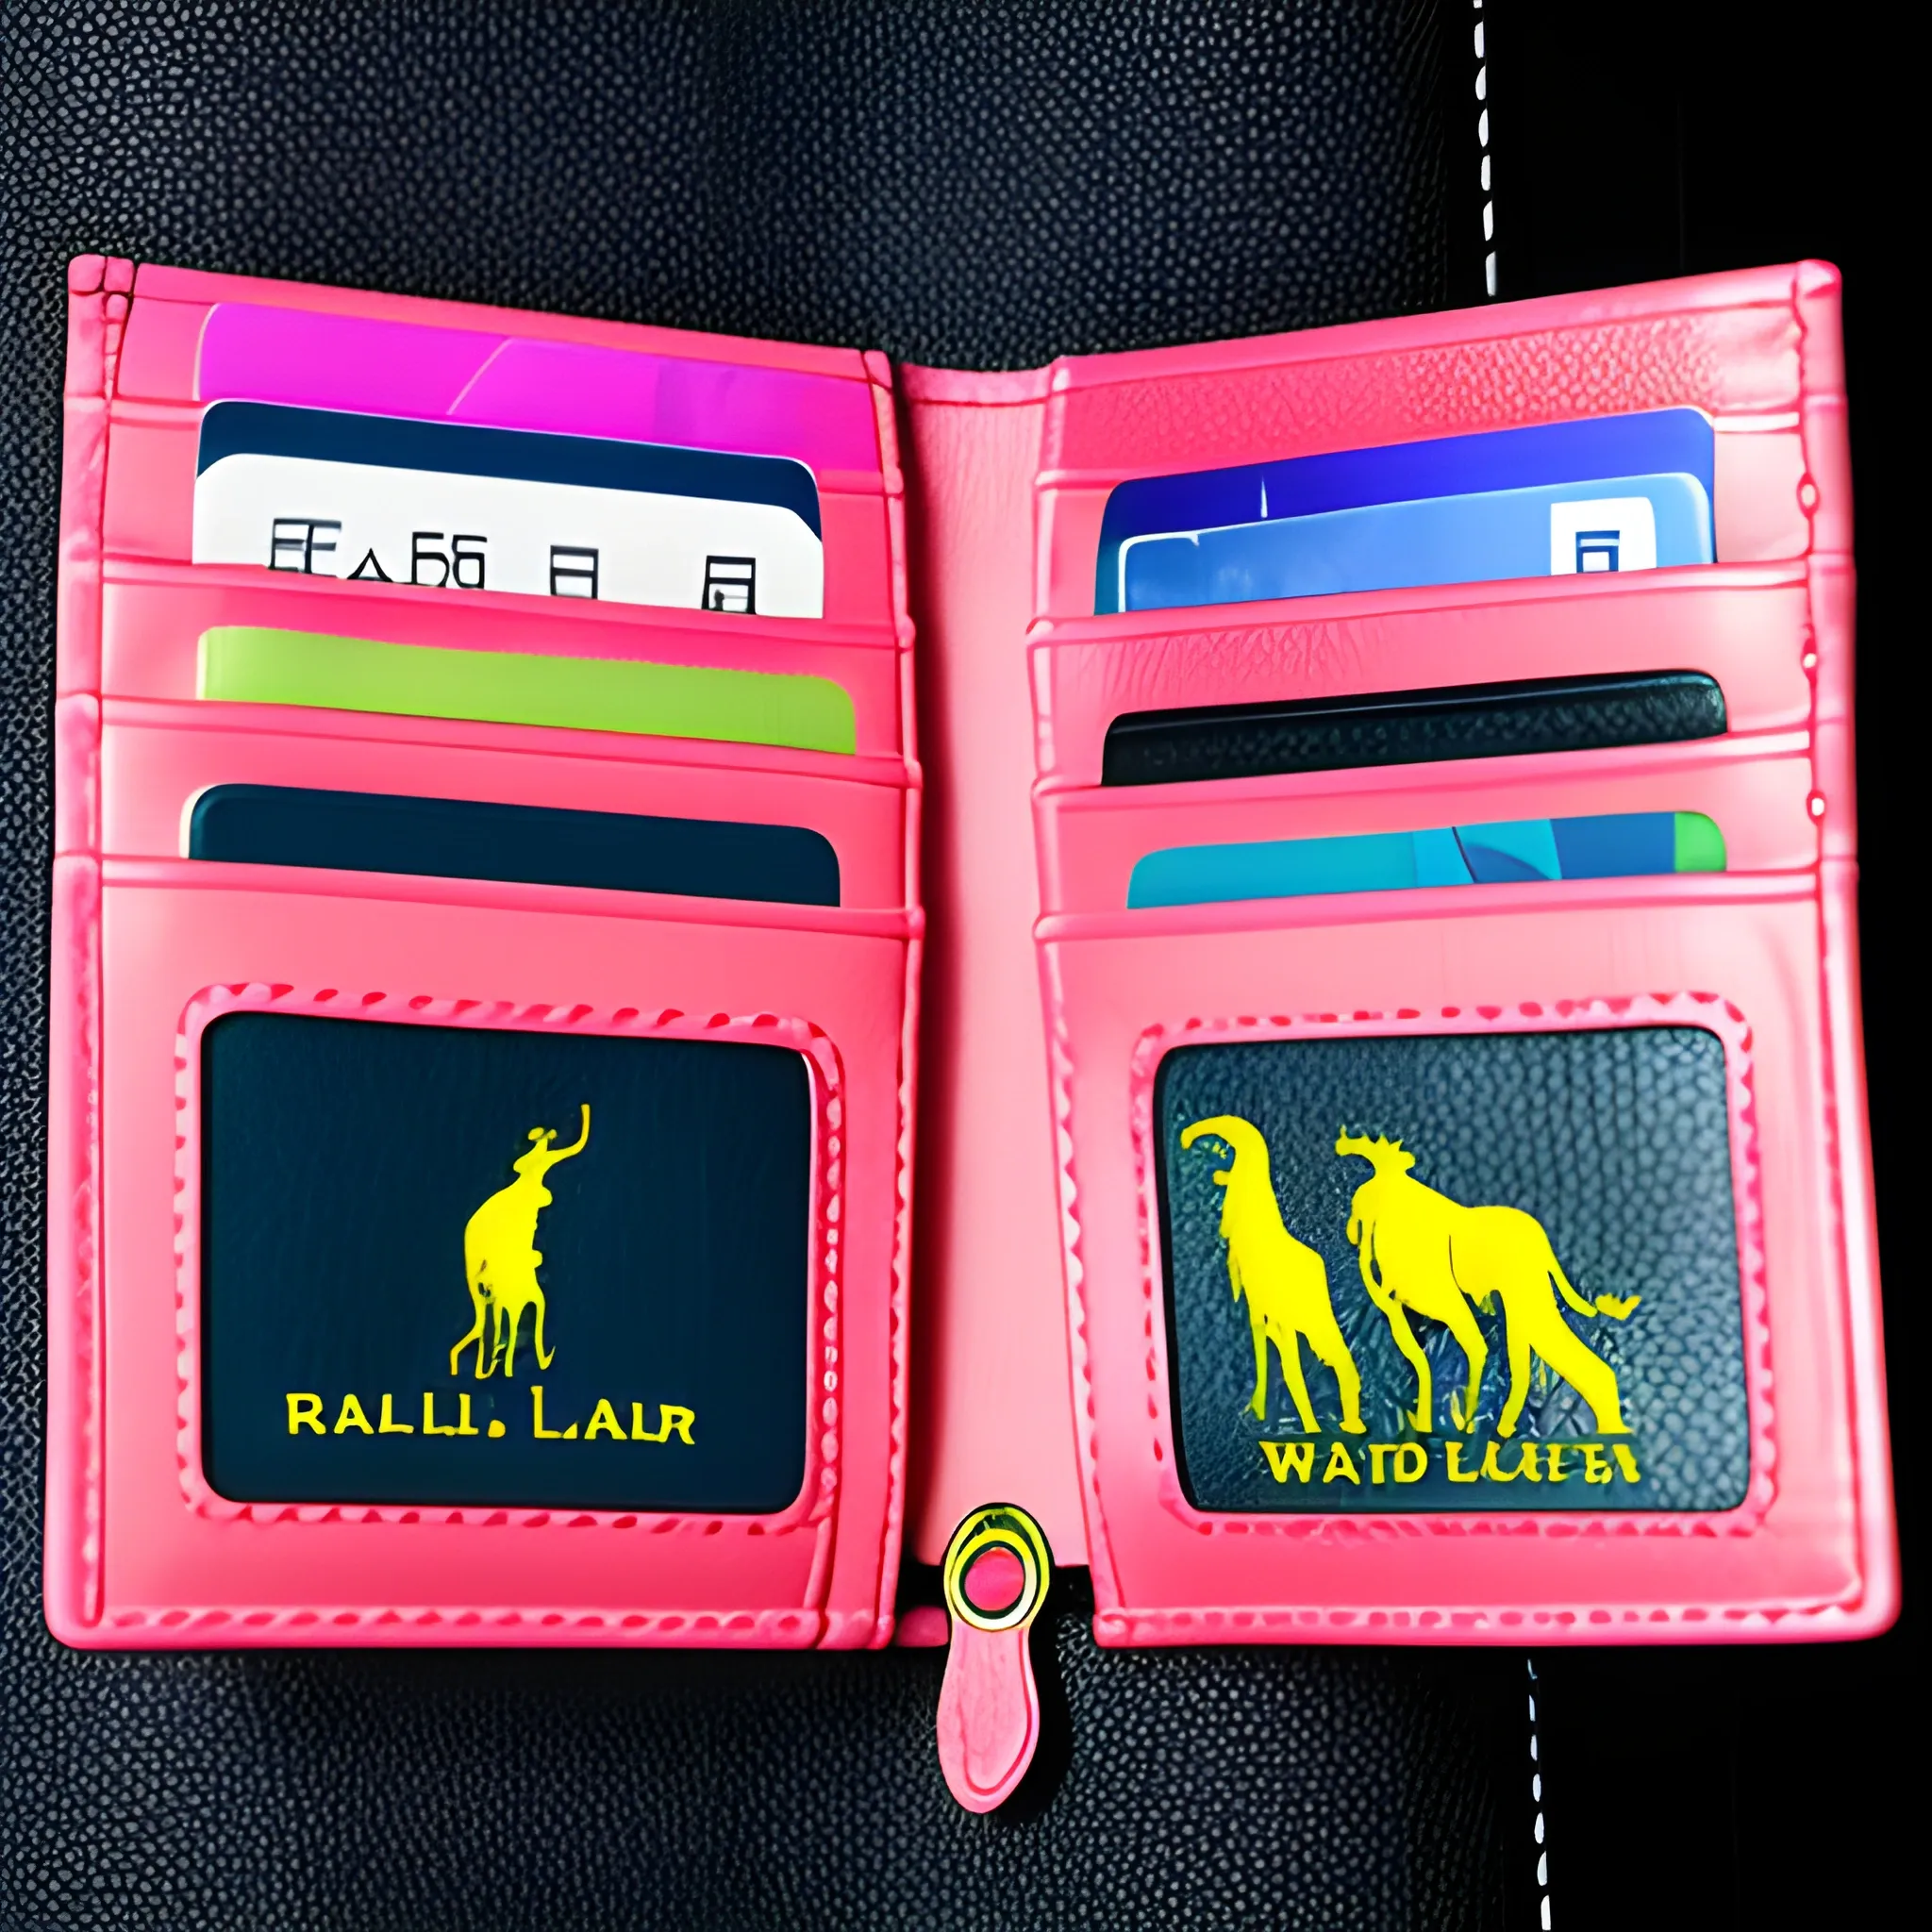 wallet designed by ralph lauren on acid